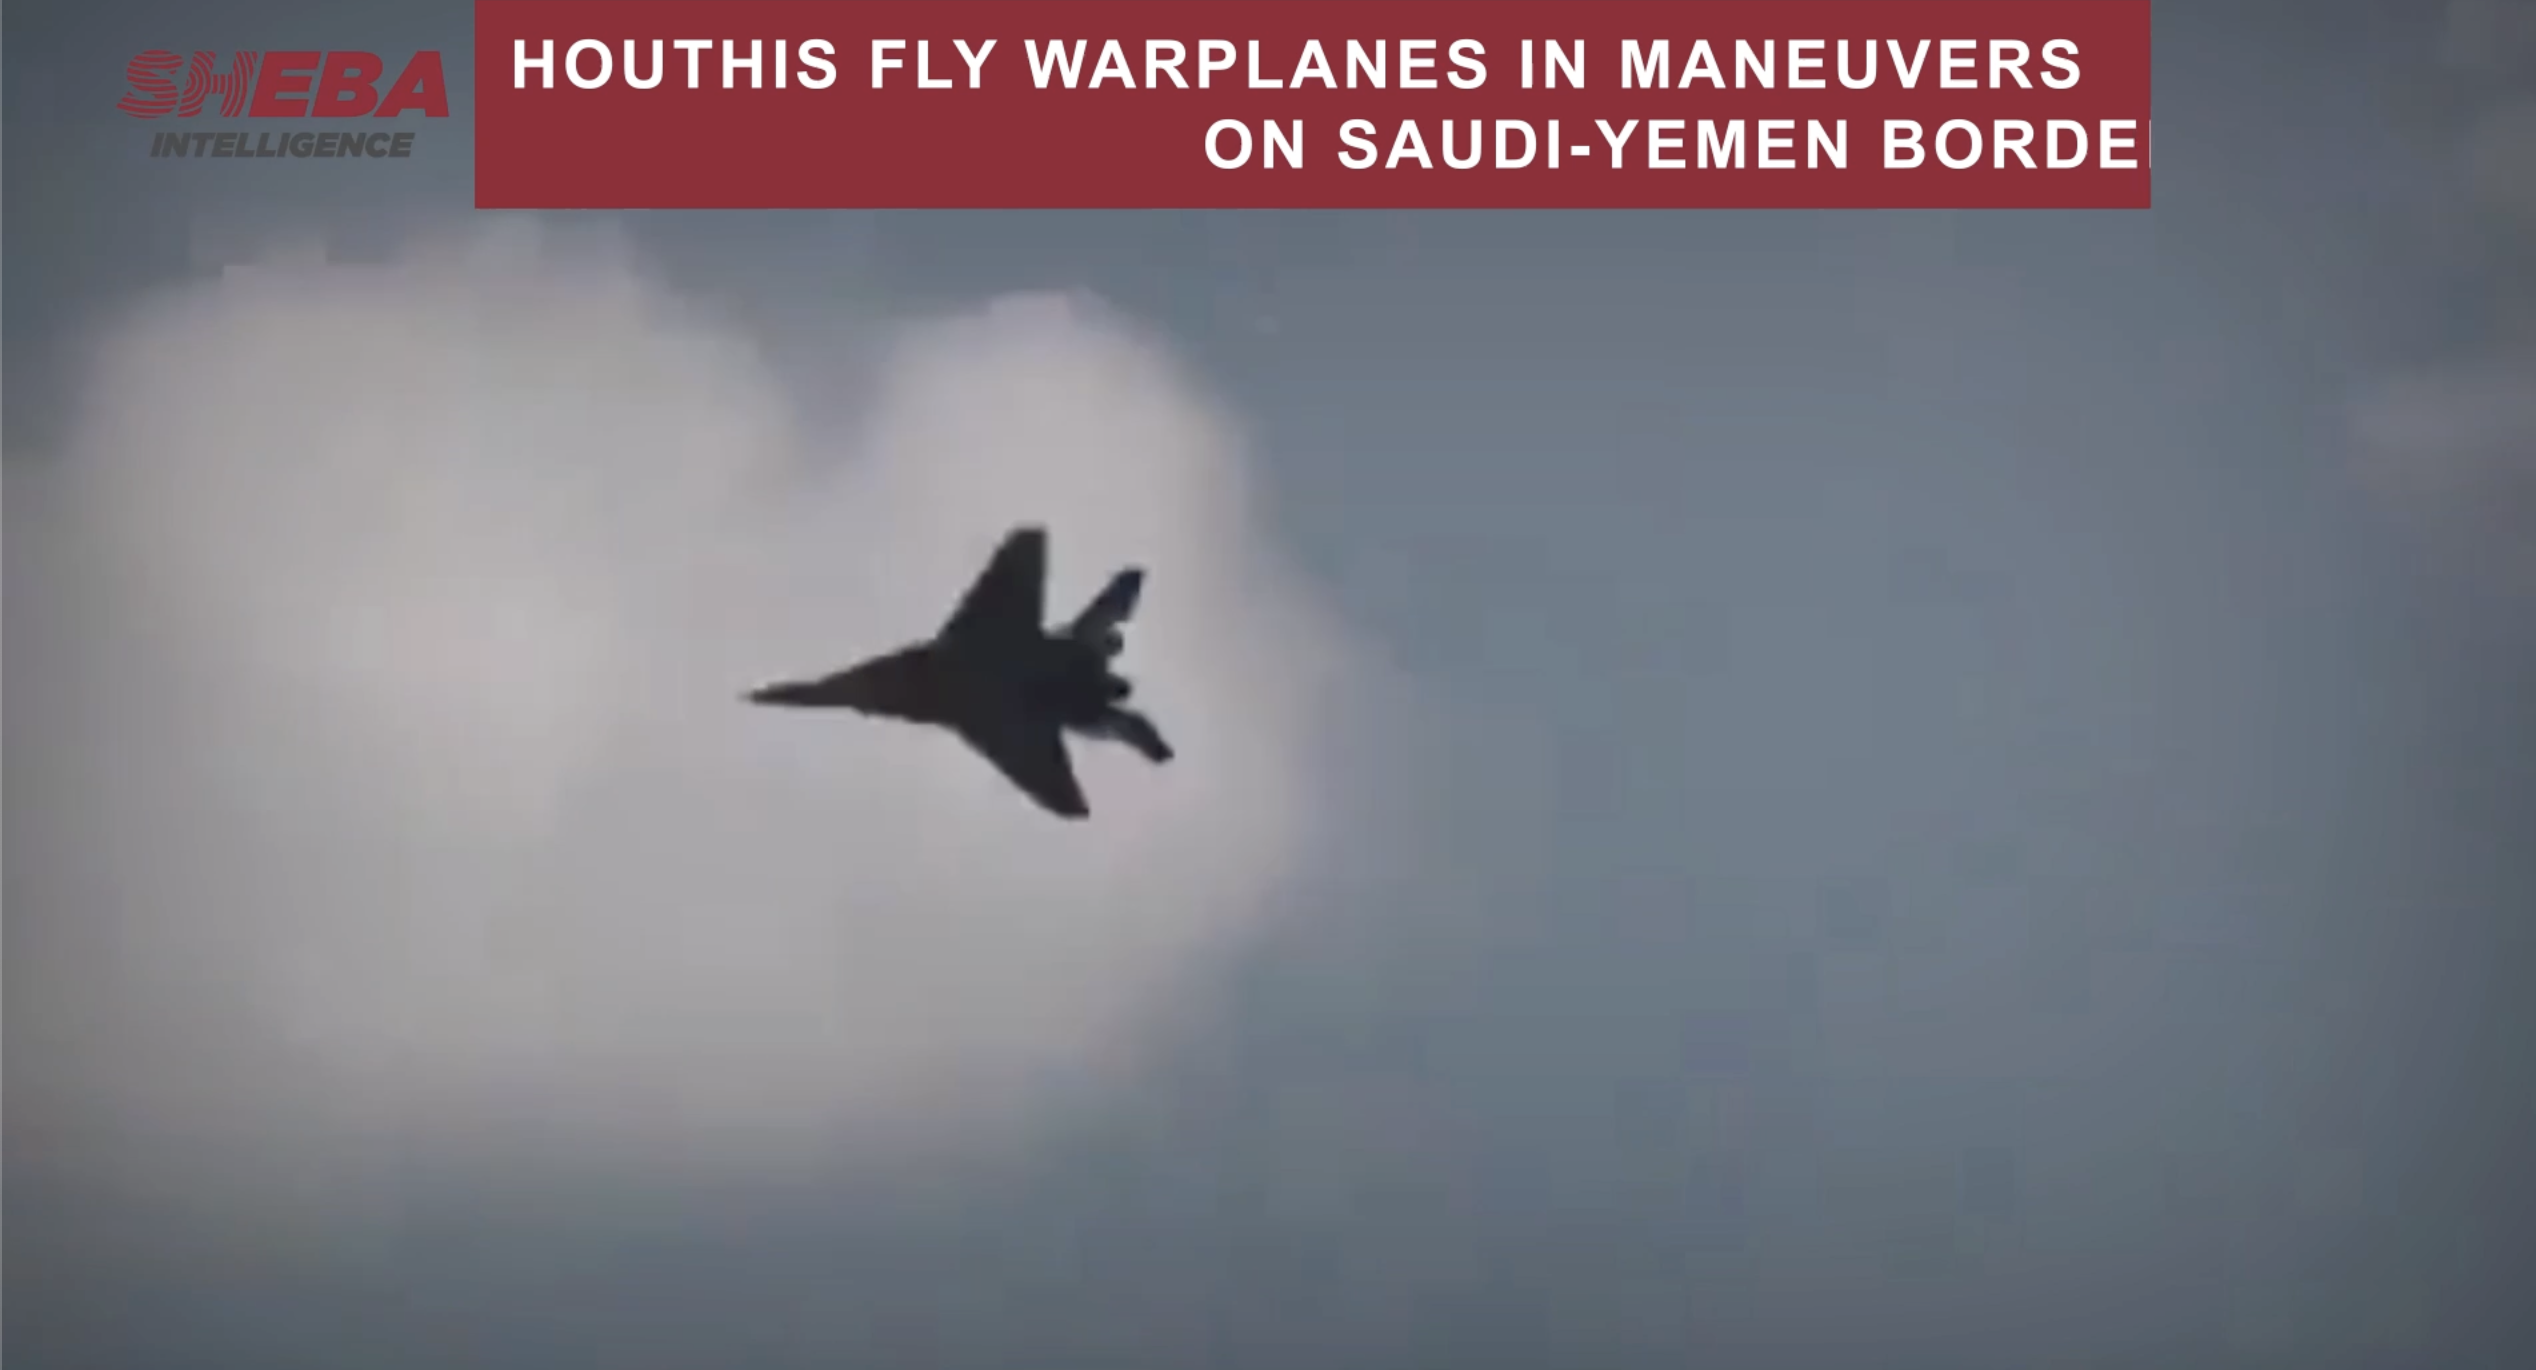 Houthis Fly Warplanes in Maneuvers on Saudi-Yemen Border